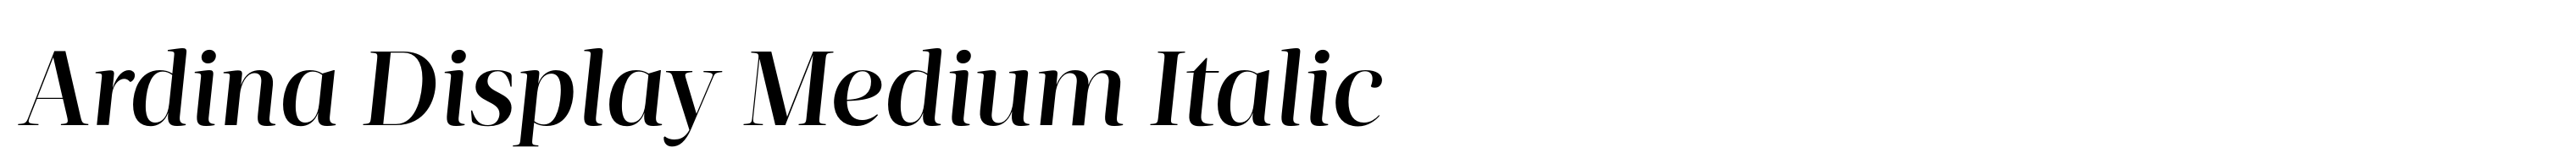 Ardina Display Medium Italic